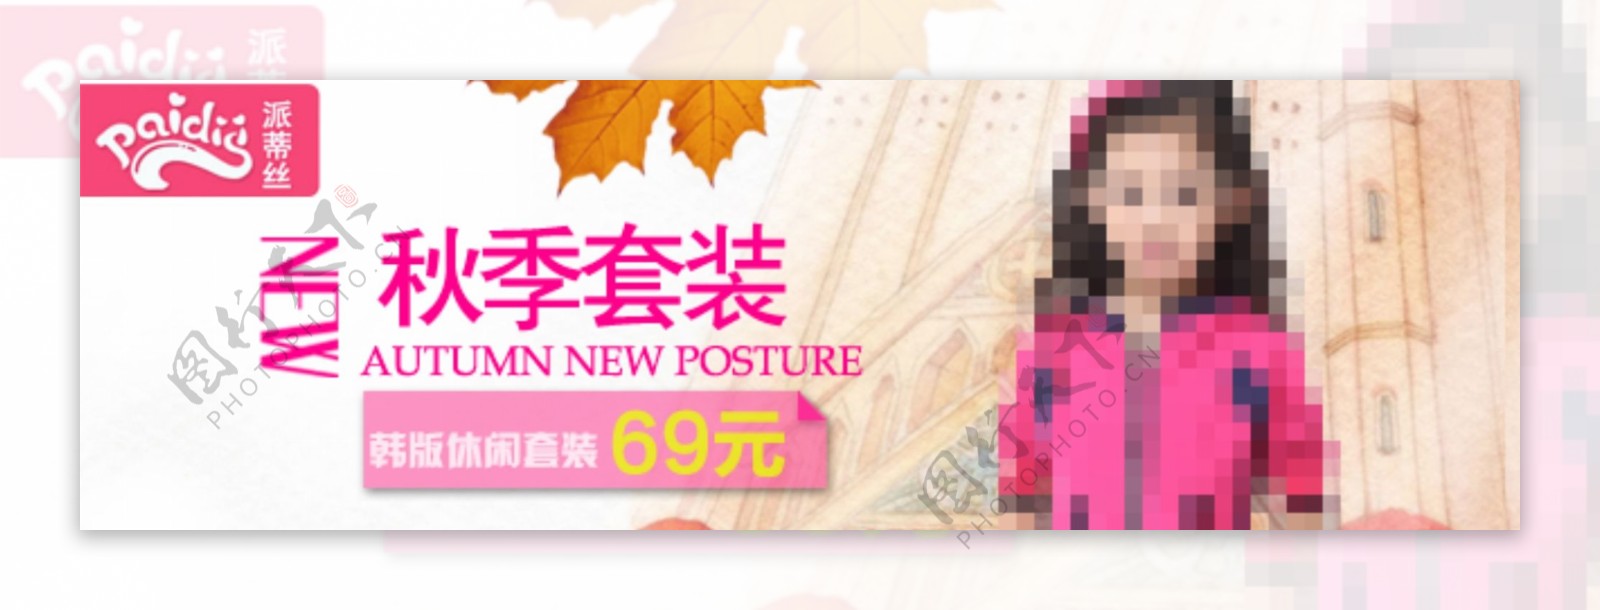 女童套装秋季促销海报